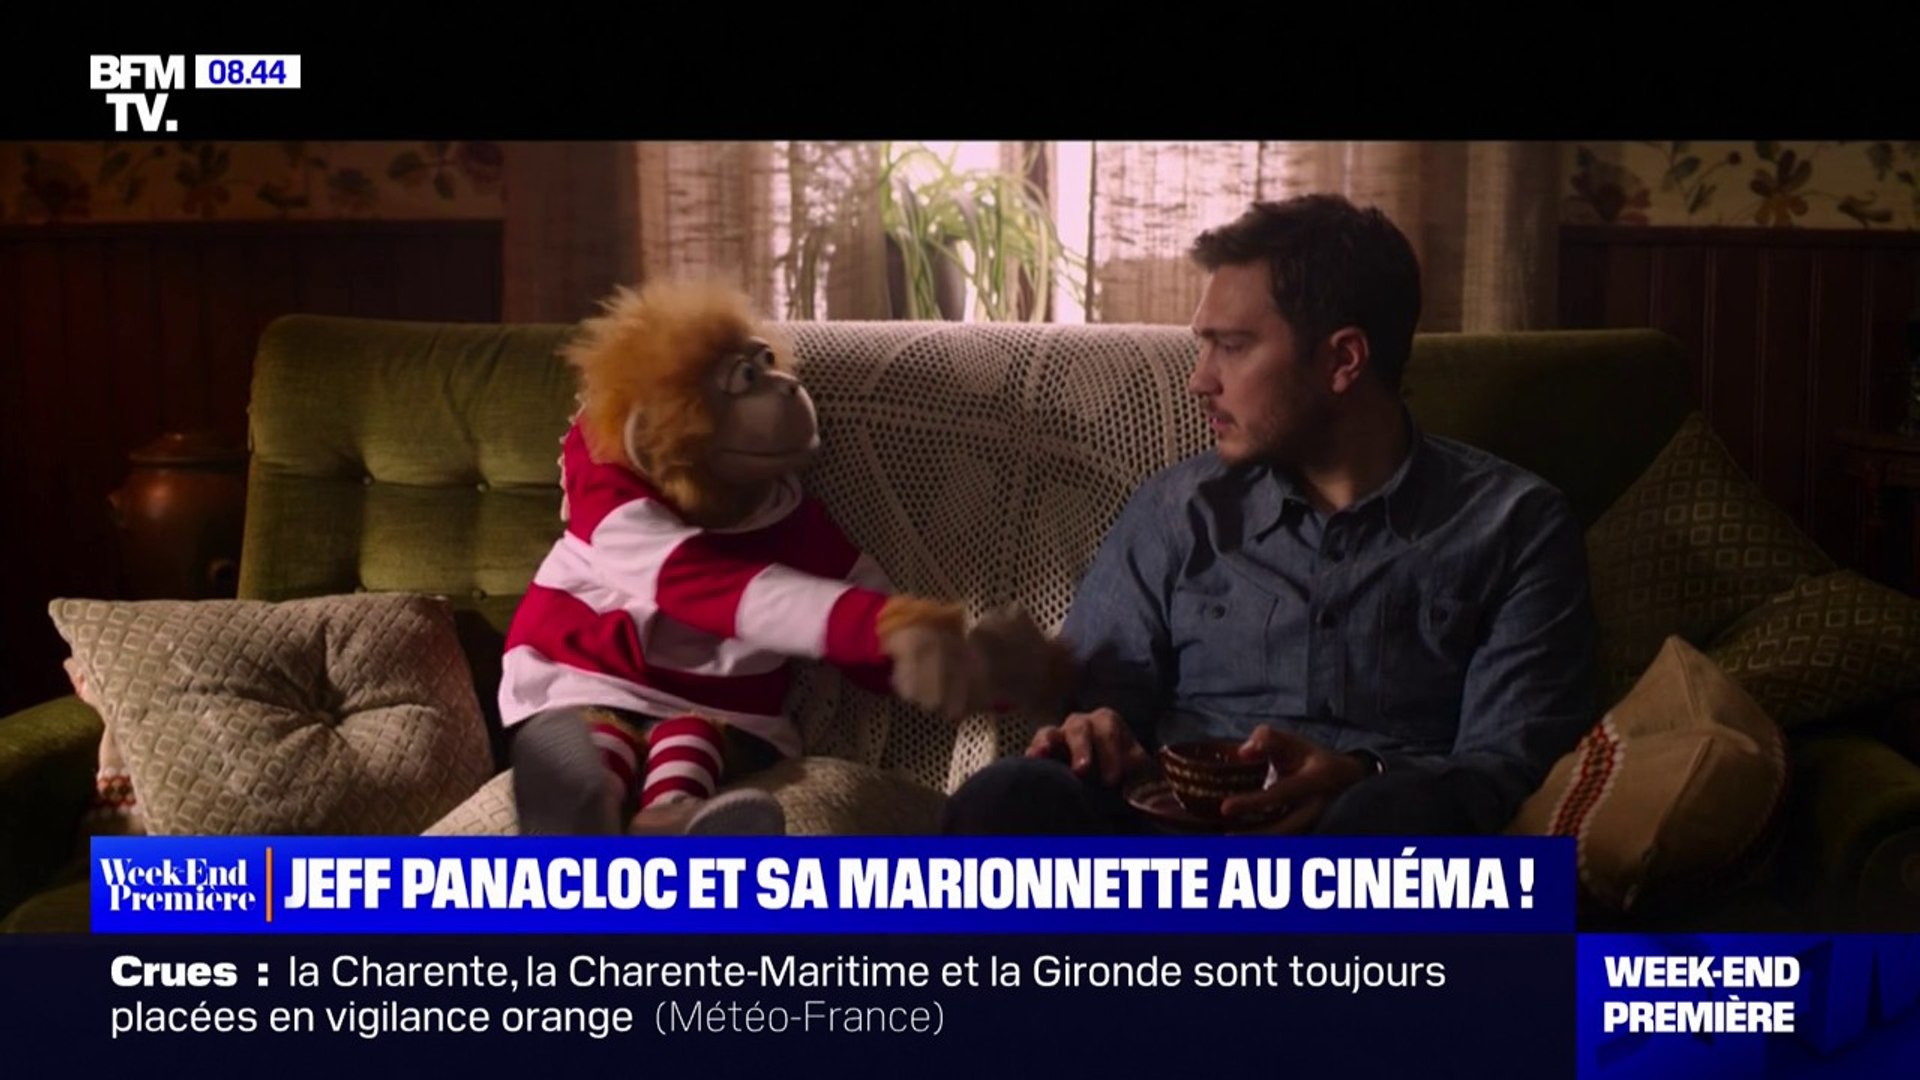 Jean-Marc-la-marionnette-Jeff-Panacloc-ventriloque-humoriste-photo-officielle-comédie-des-boulevards-paris.jpg, Avatars, kev1